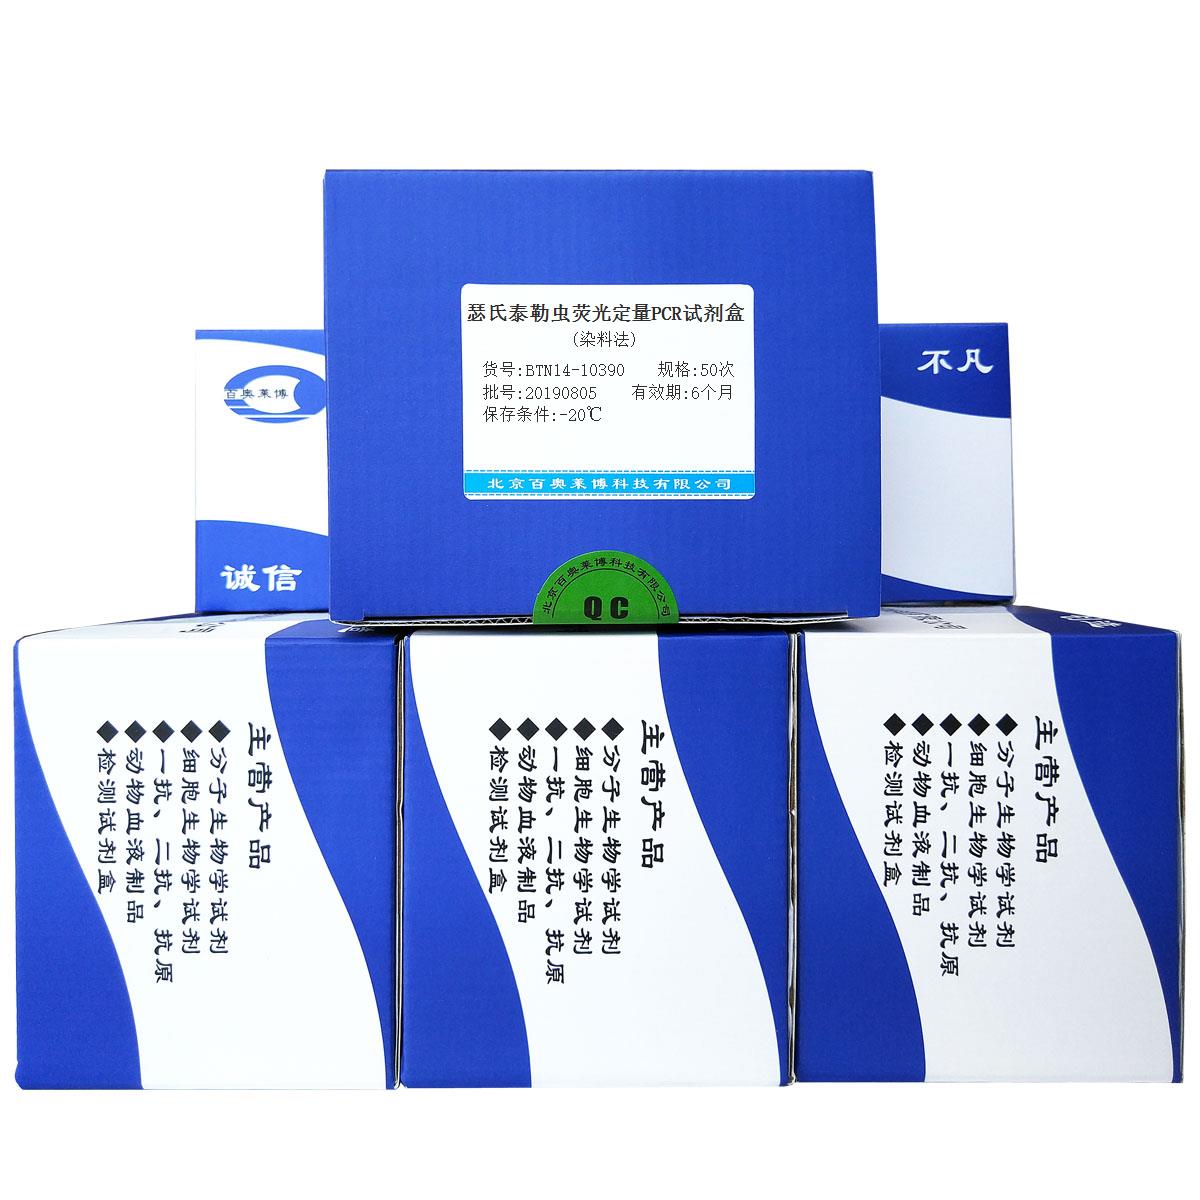 瑟氏泰勒虫荧光定量PCR试剂盒(染料法)